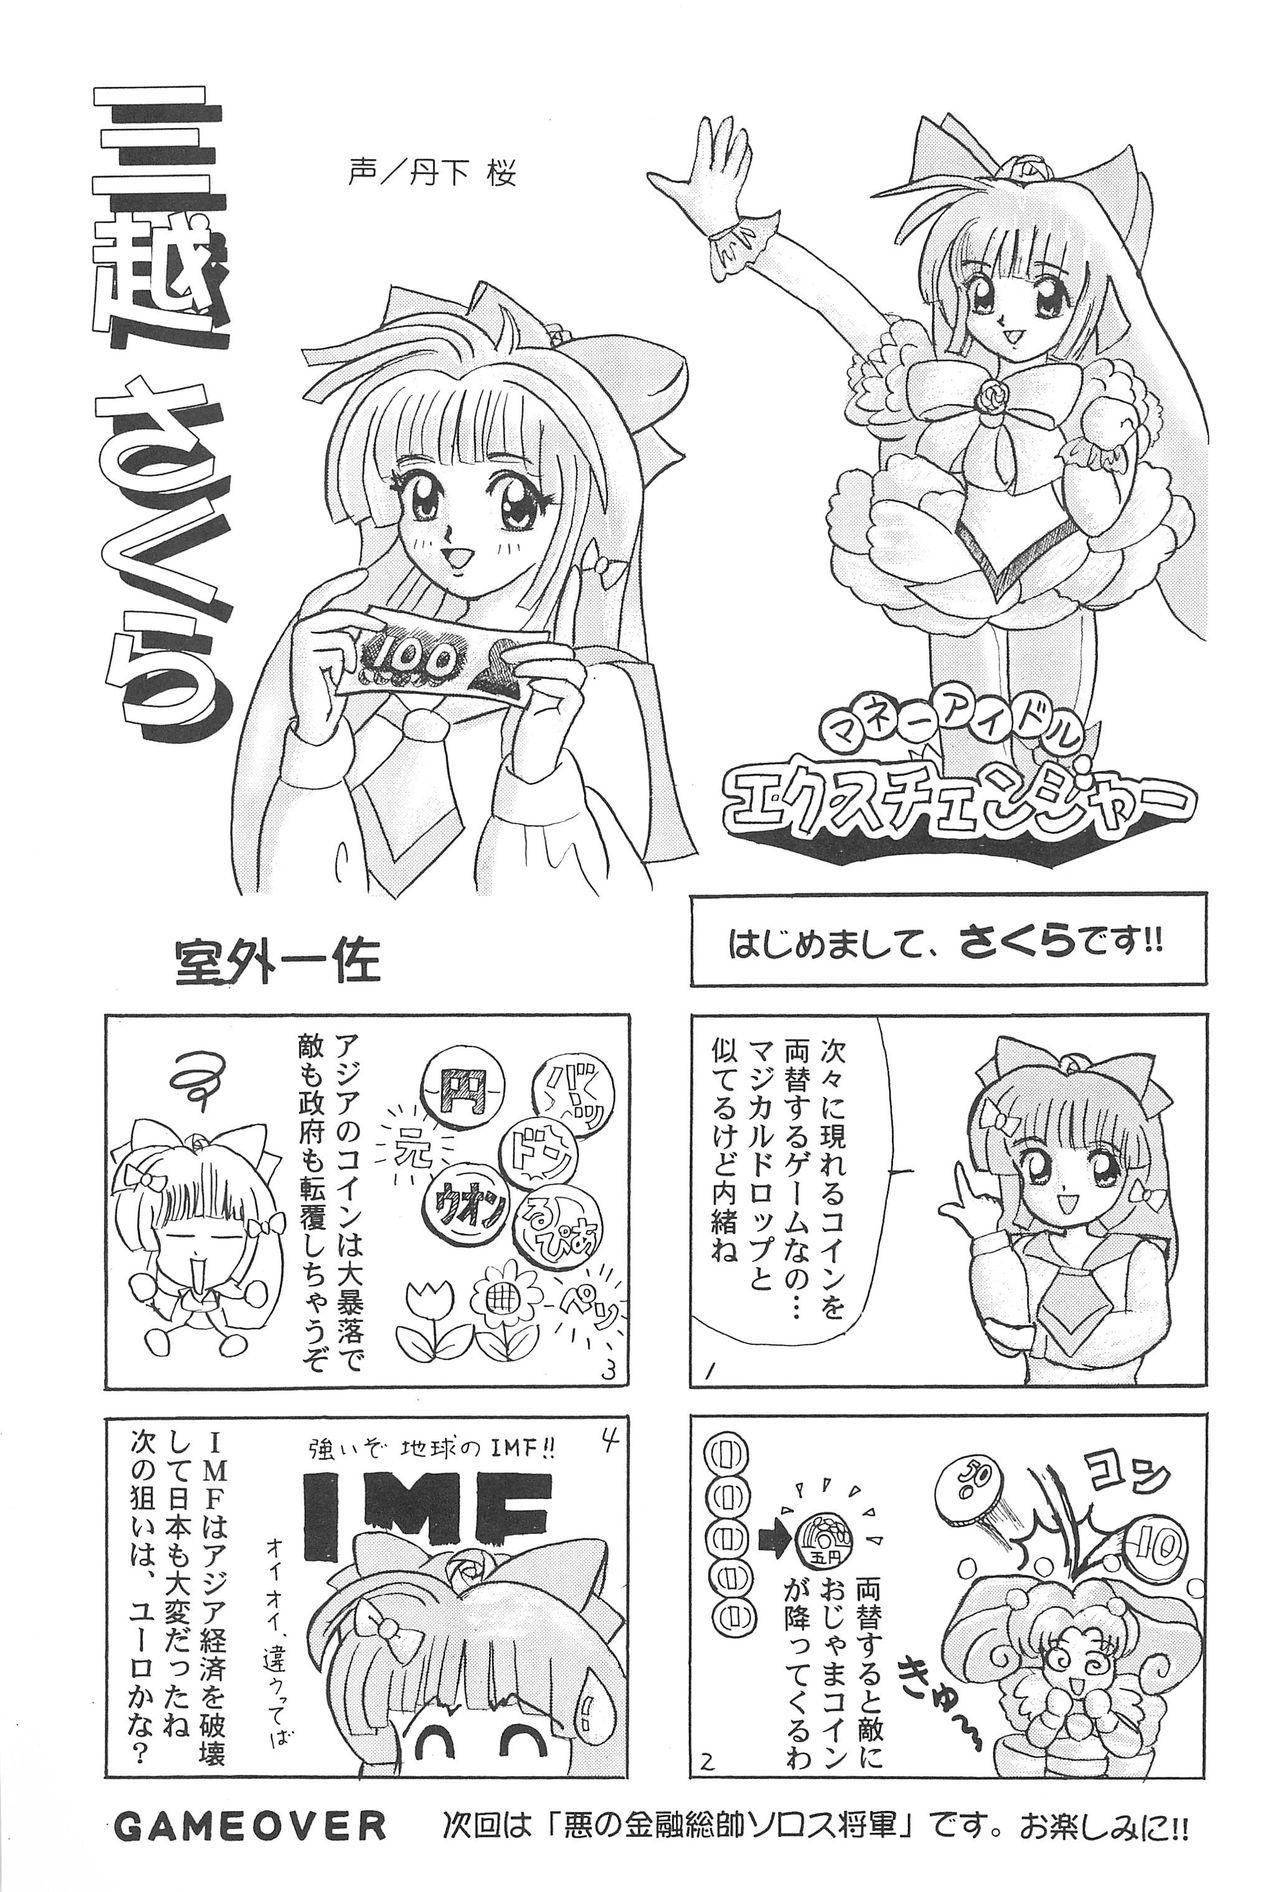 Sakura ja Nai Moon!! Character Voice Tange Sakura 27